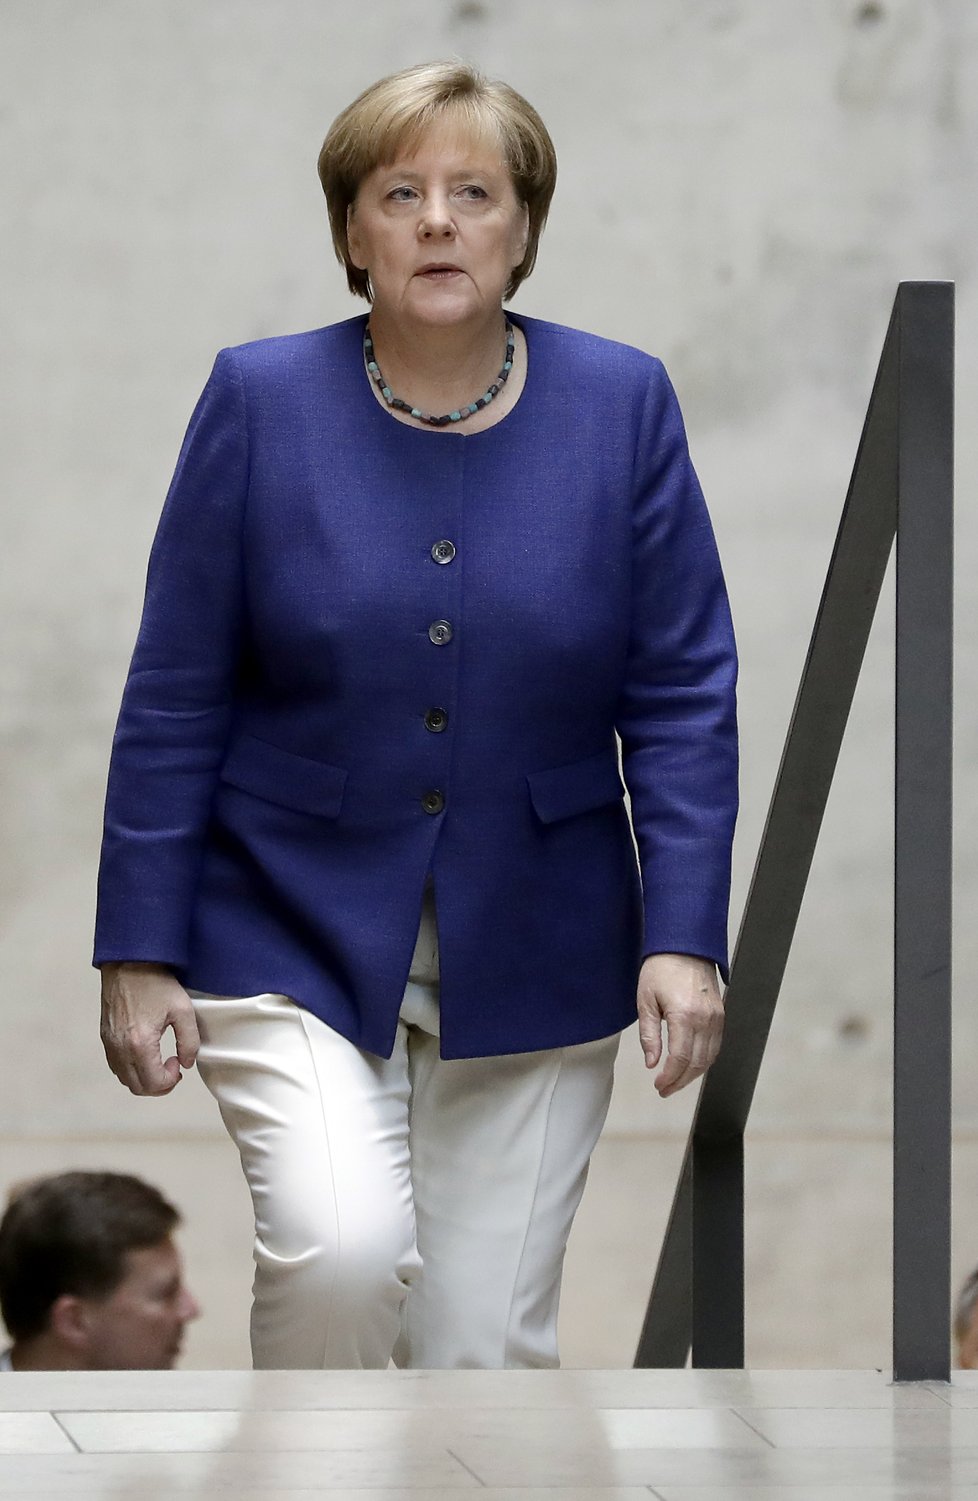 Merkelová o sporu s Tureckem kvůli návštěvě vojenské základny